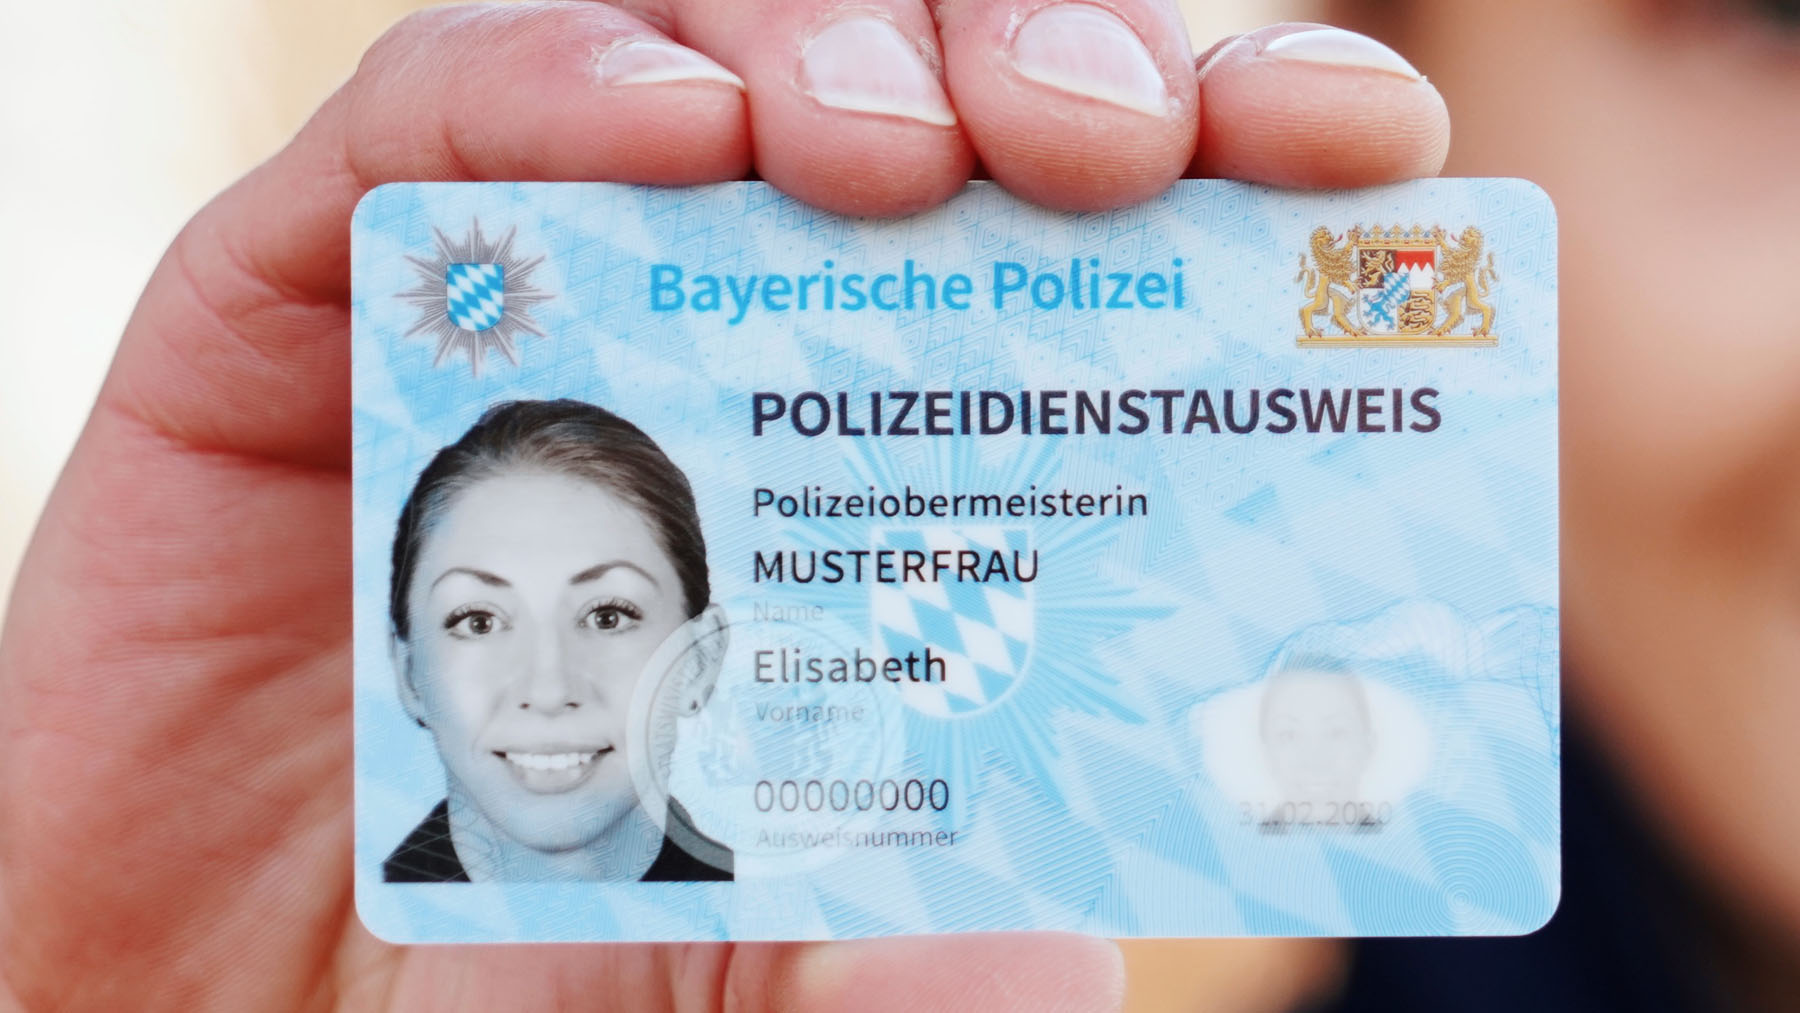 Neuer Dienstausweis der Bayerischen Polizei – Arts Fotos